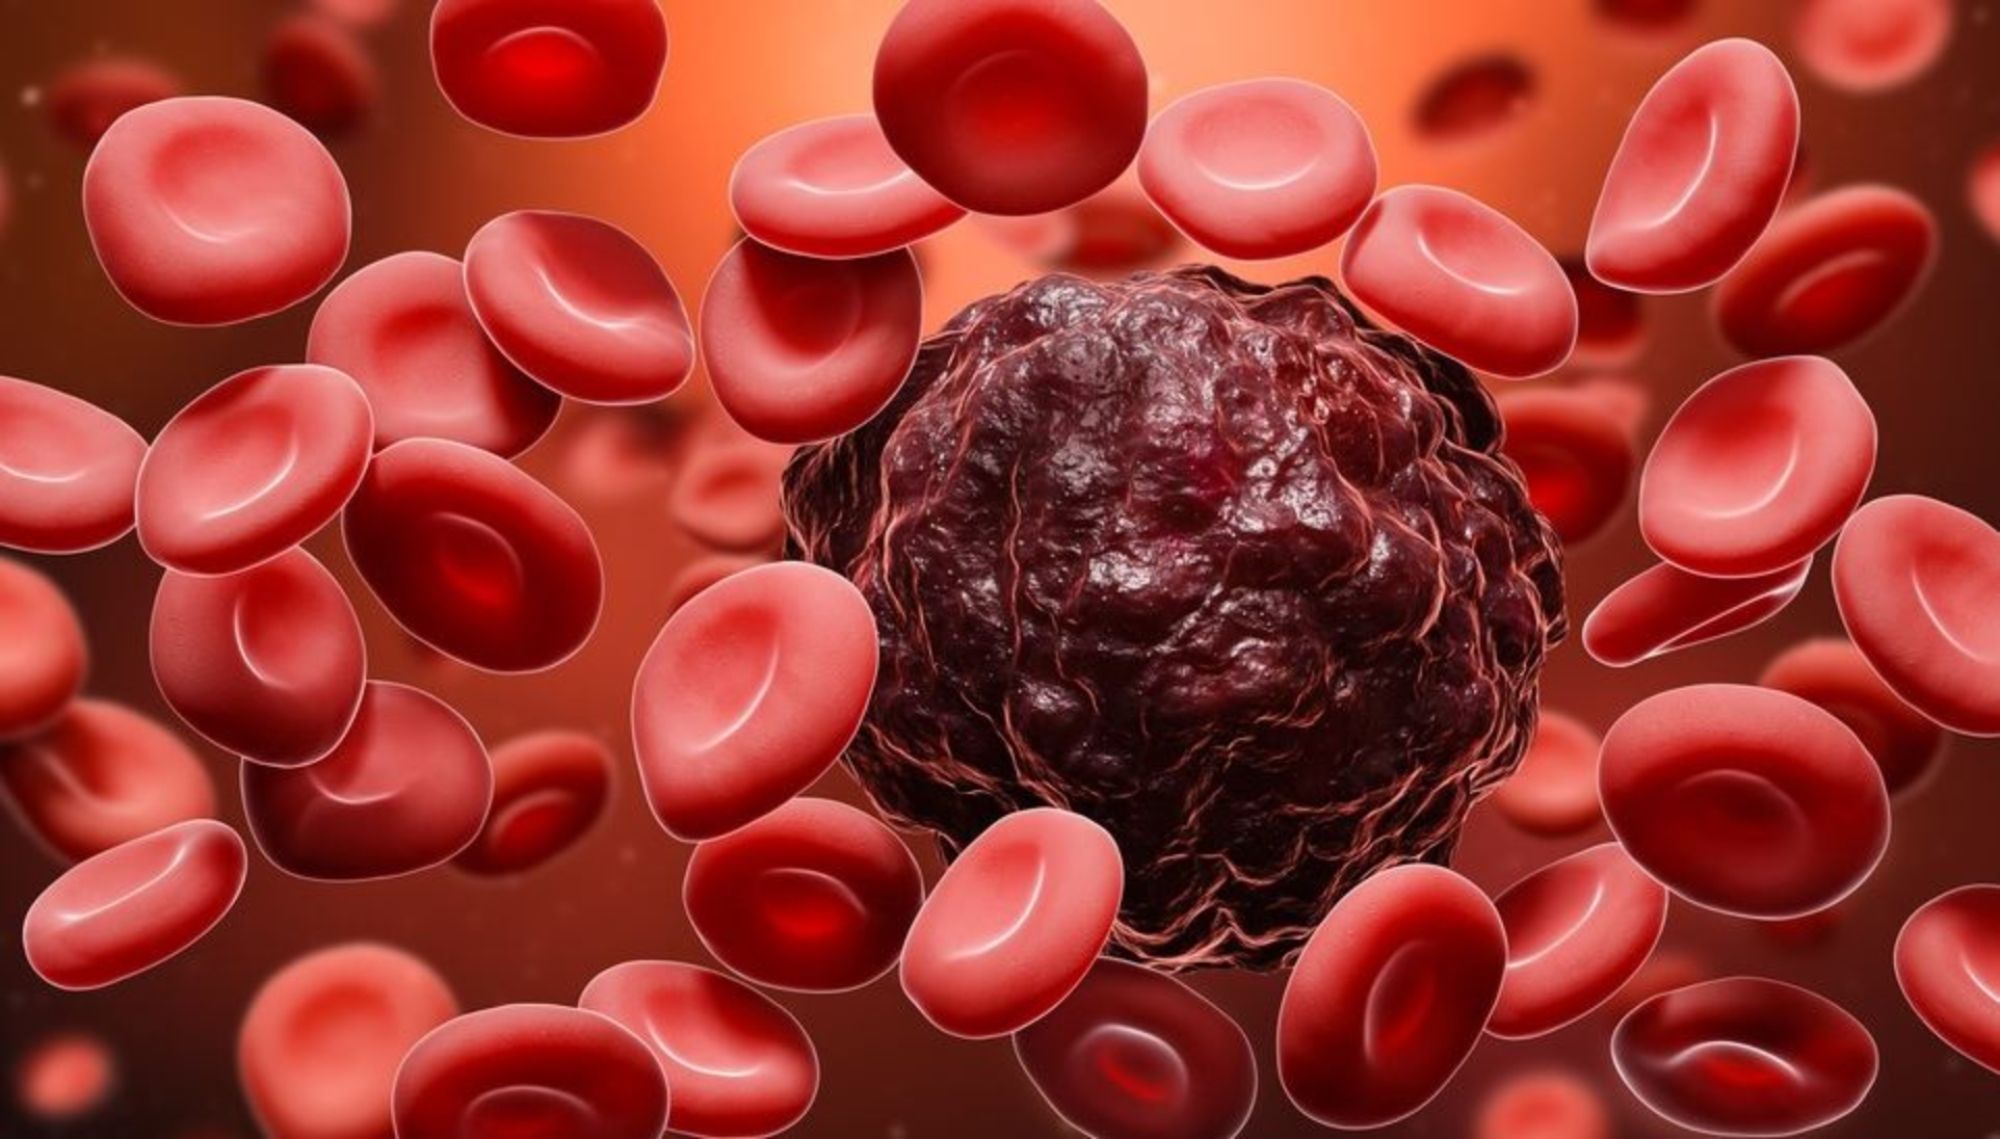 Ung thư máu sống được bao lâu?